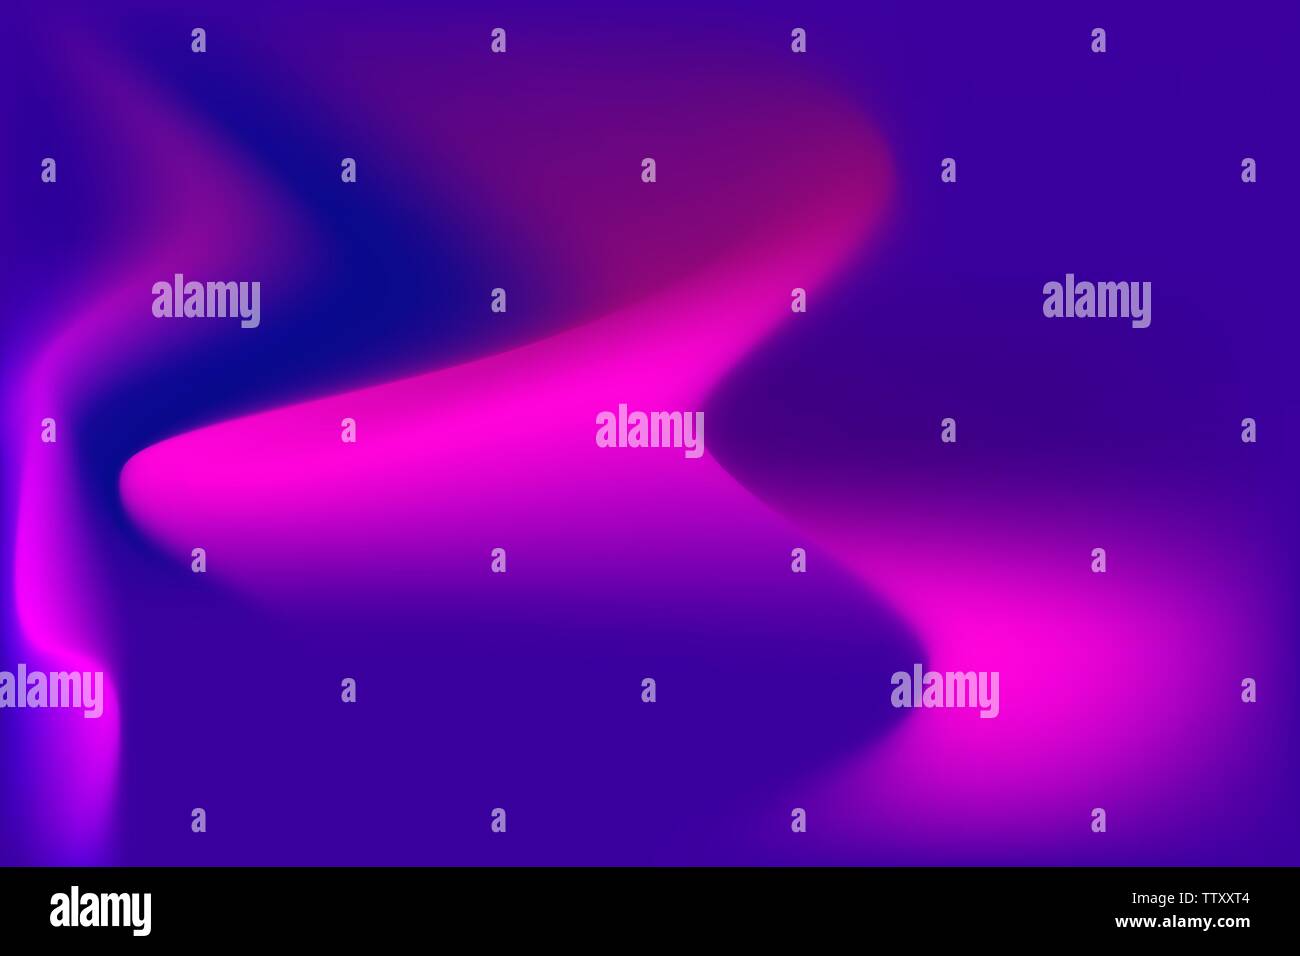 Abstract sfondo fantasy con ondulate rosa viola i gradienti di colore e luce percorsi su sfondo blu Illustrazione Vettoriale